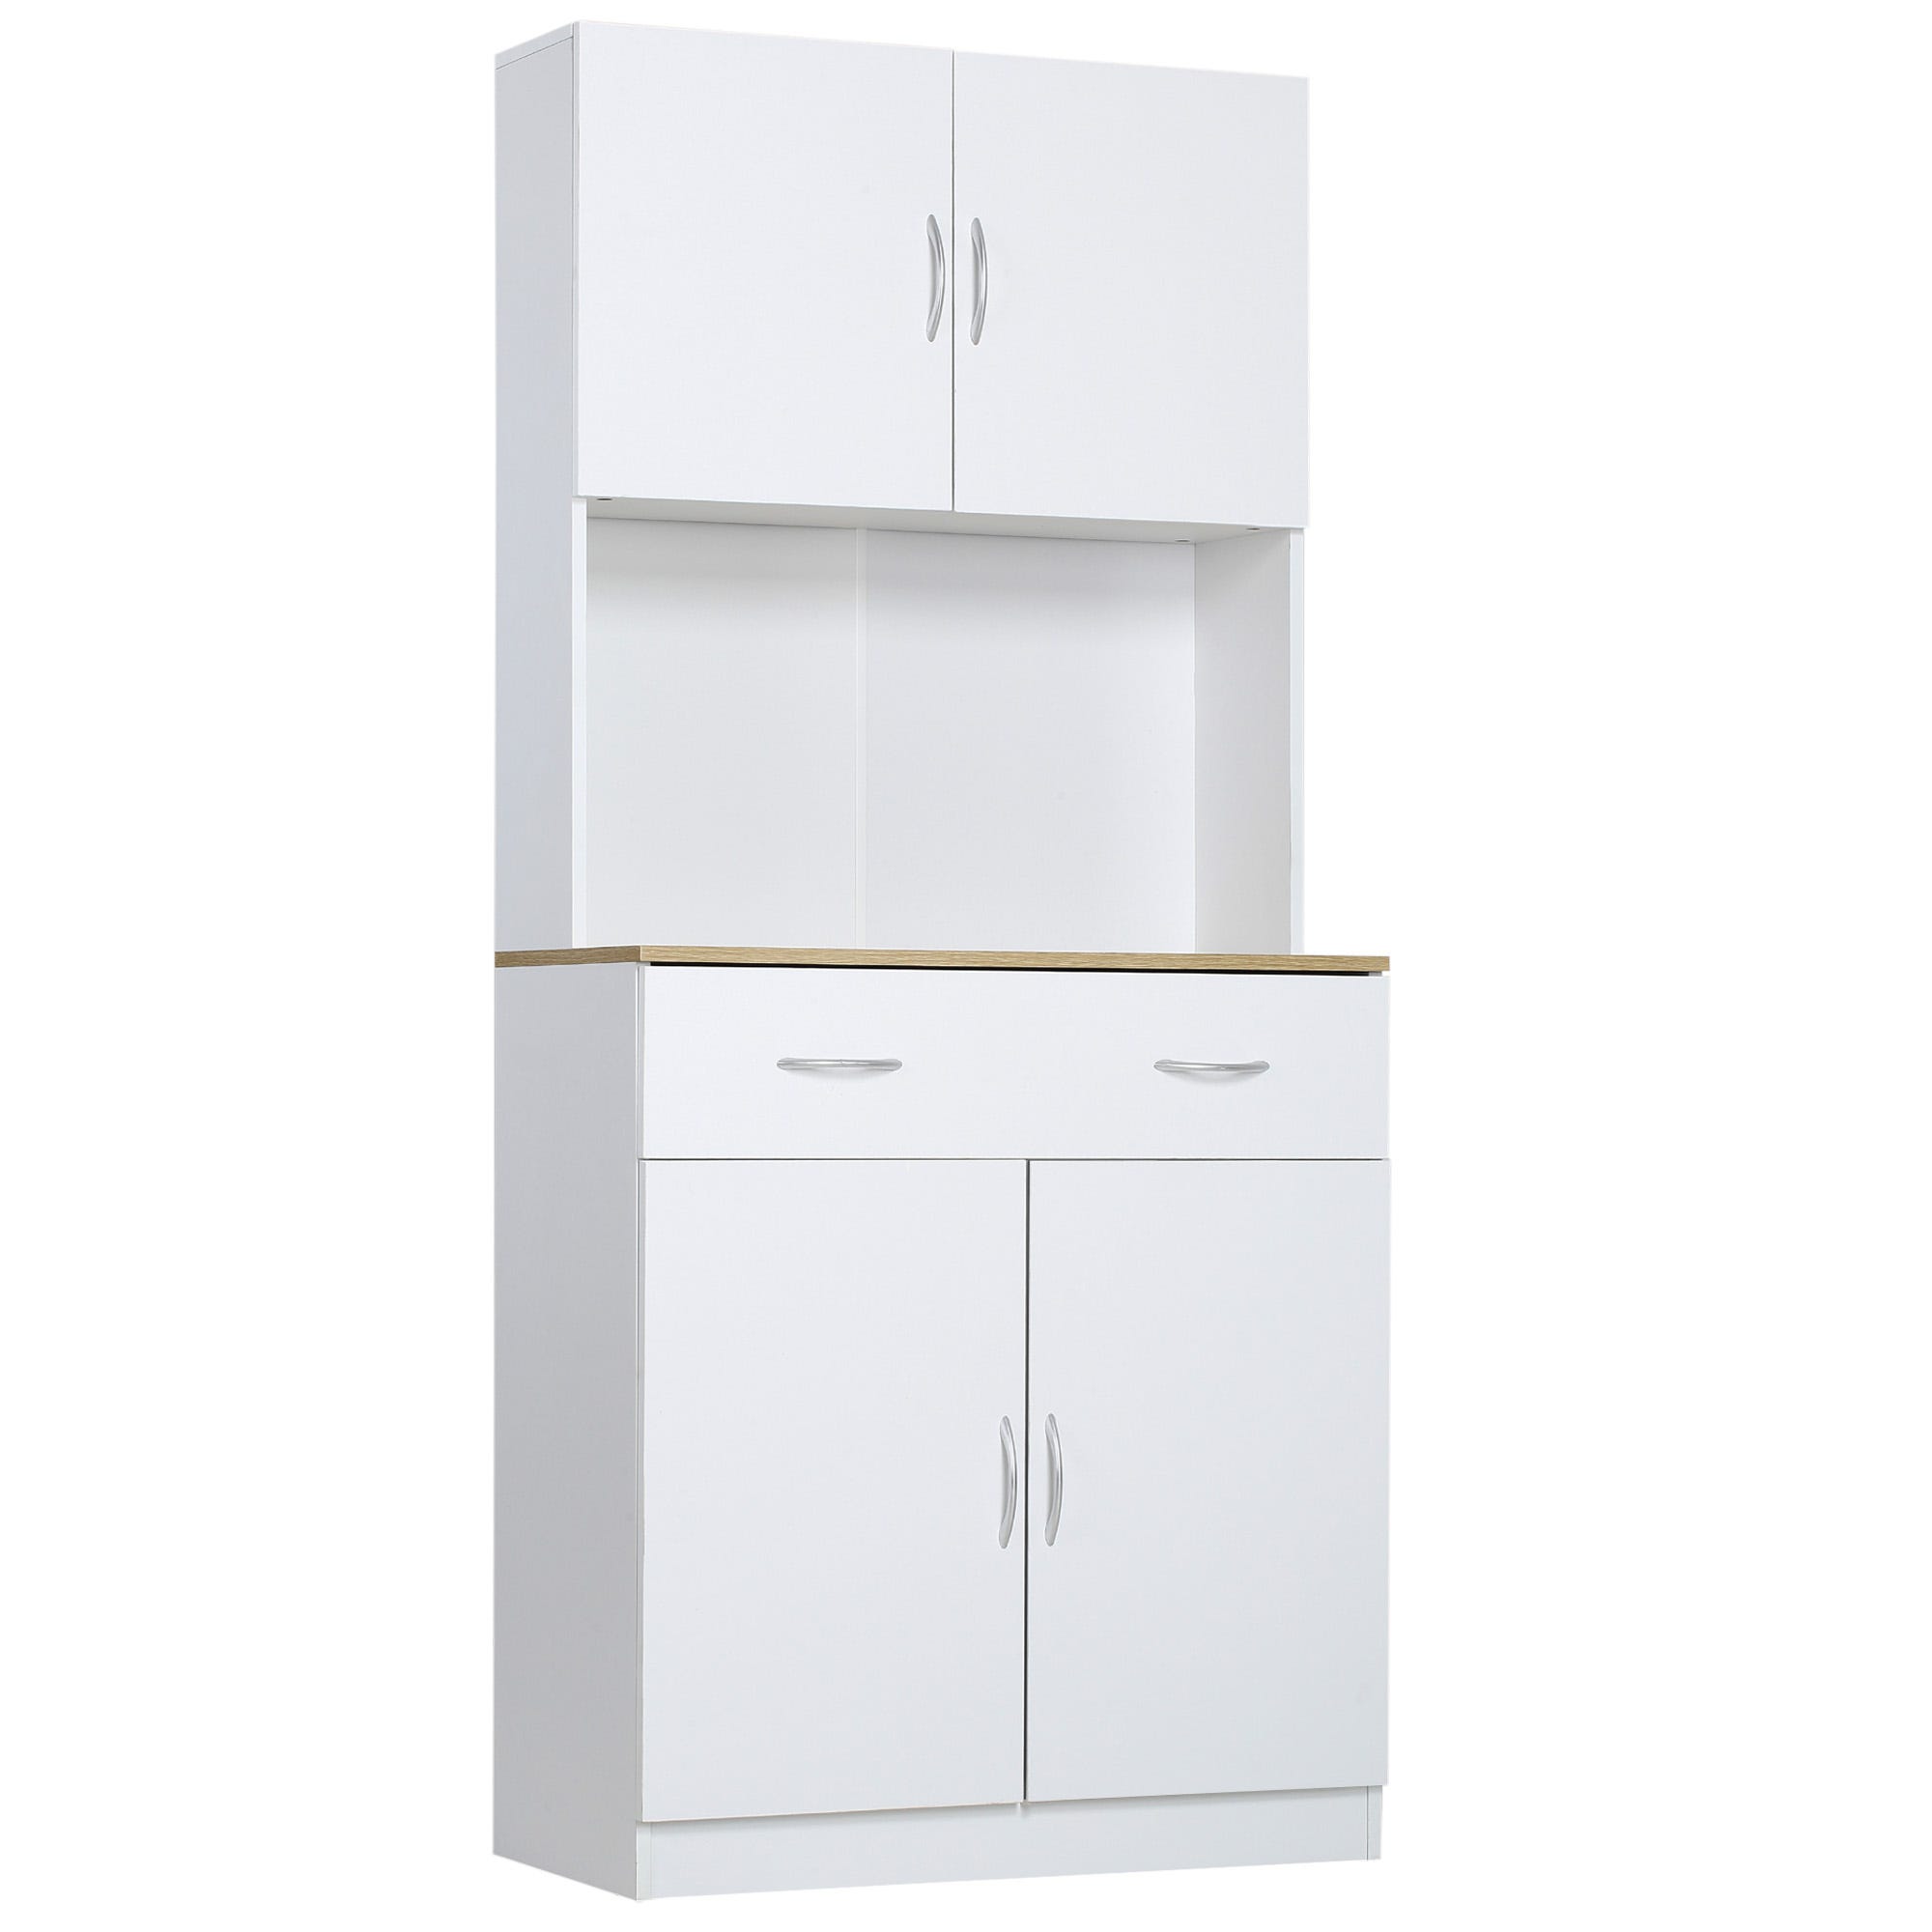 Armario de almacenamiento de cocina con 2 cajones y estantes ajustables,  armarios de despensa para cocina, sala de estar y comedor, requiere montaje